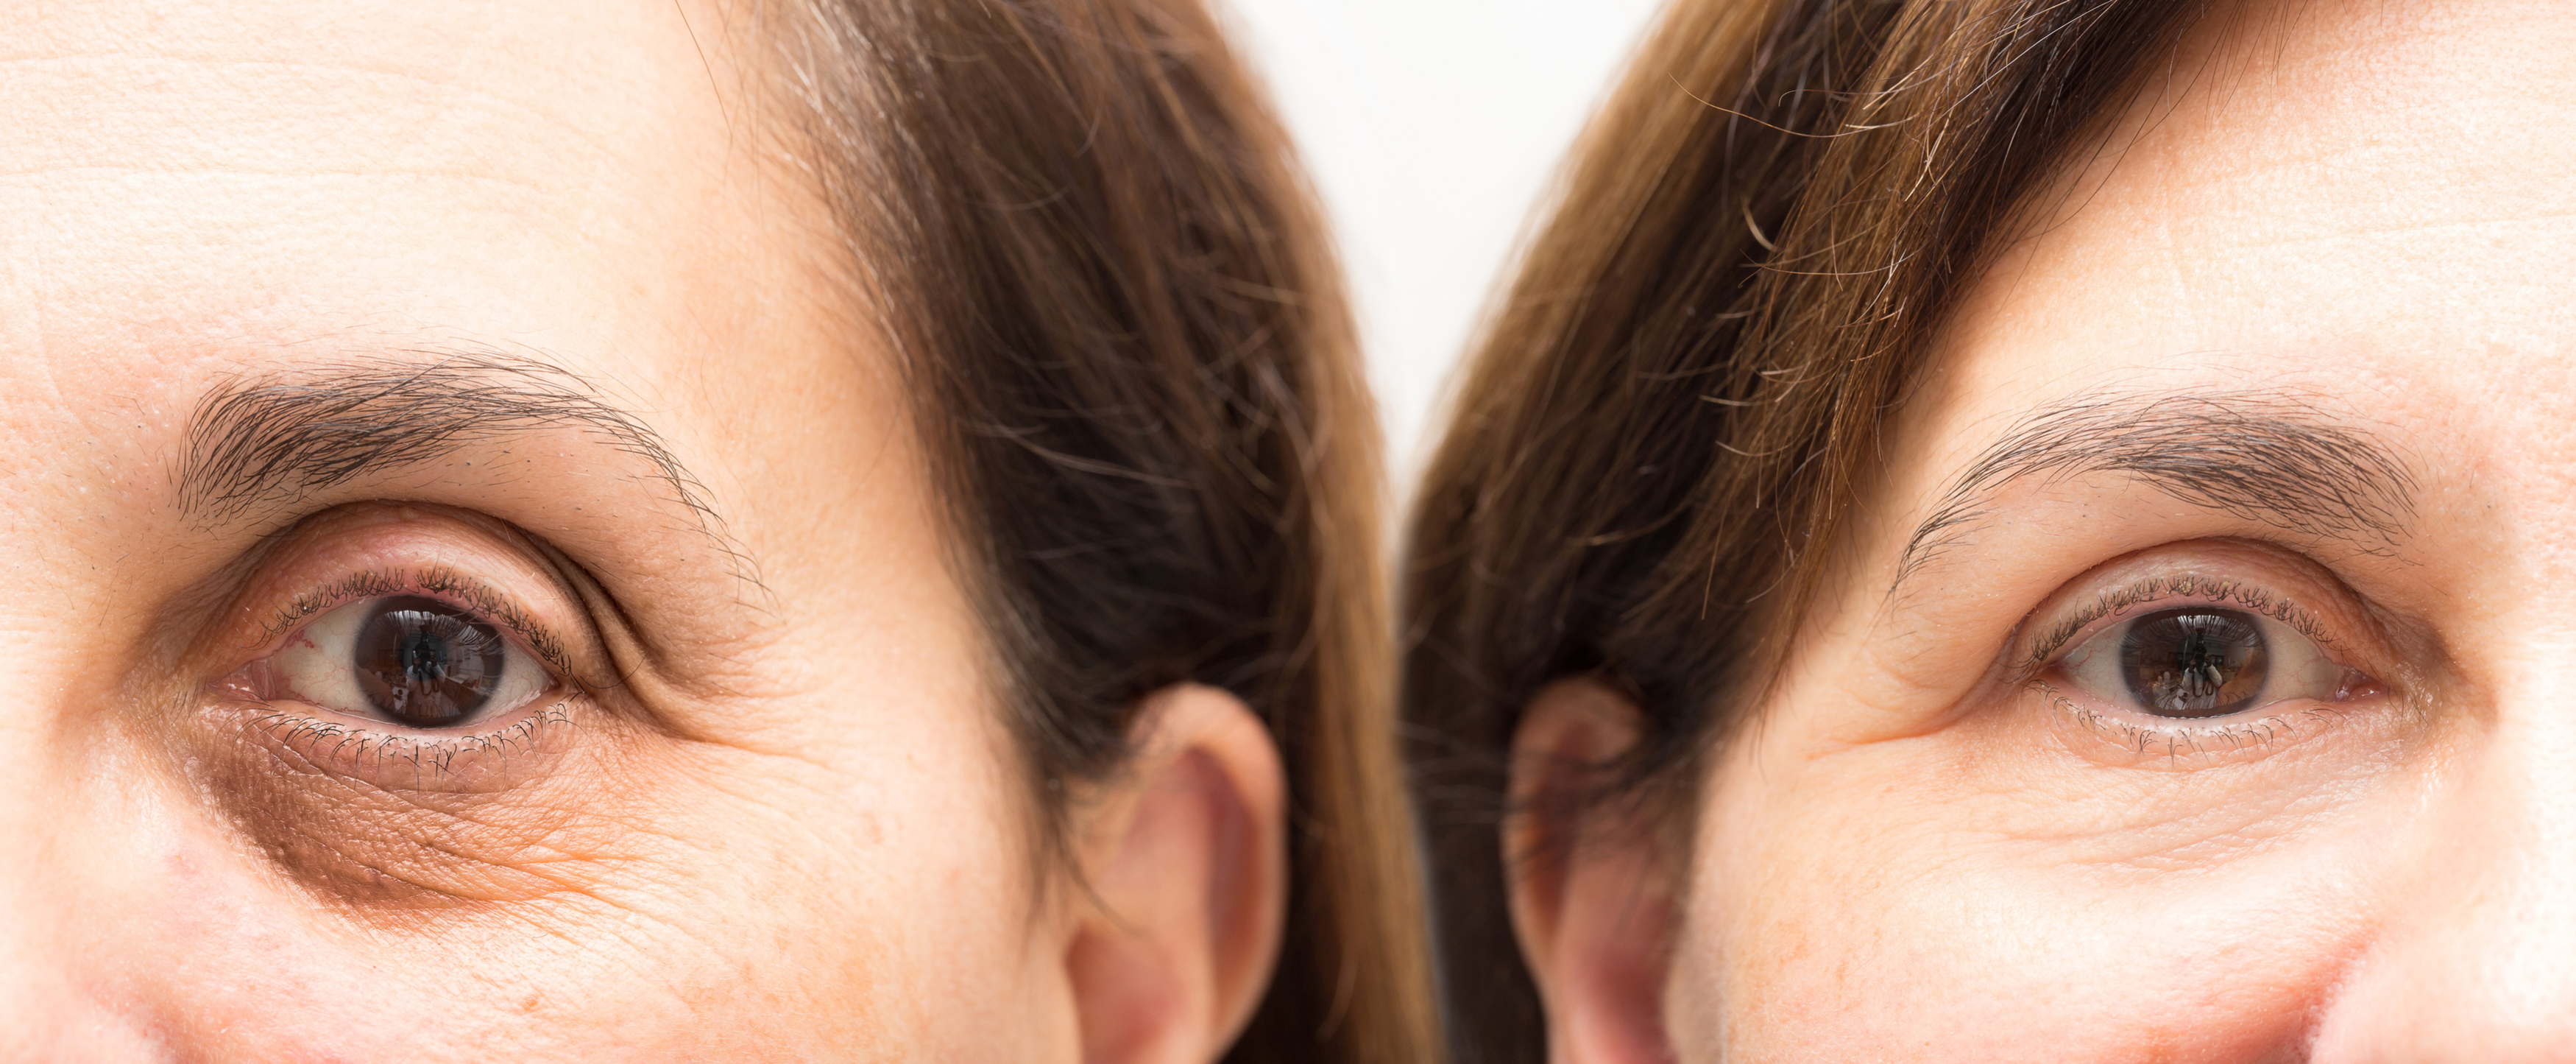 Îngrijirea pielii din jurul ochilor: cum prevenim îmbătrânirea prematură